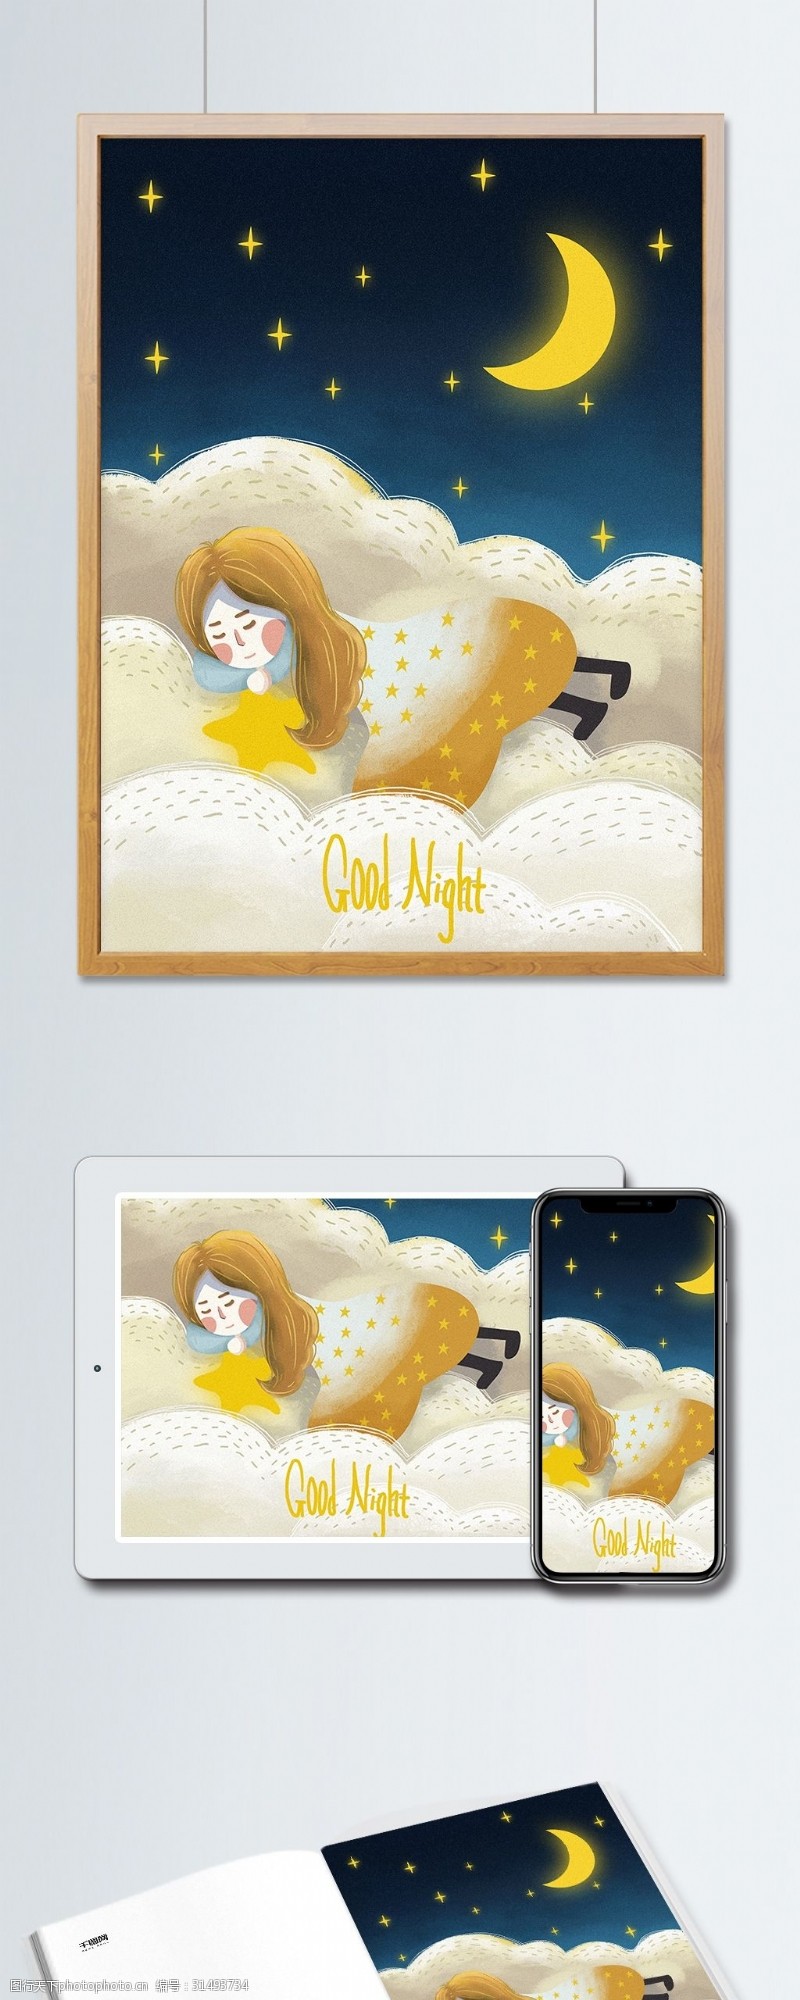 手机配图晚安世界云端睡梦中的女孩治愈插画